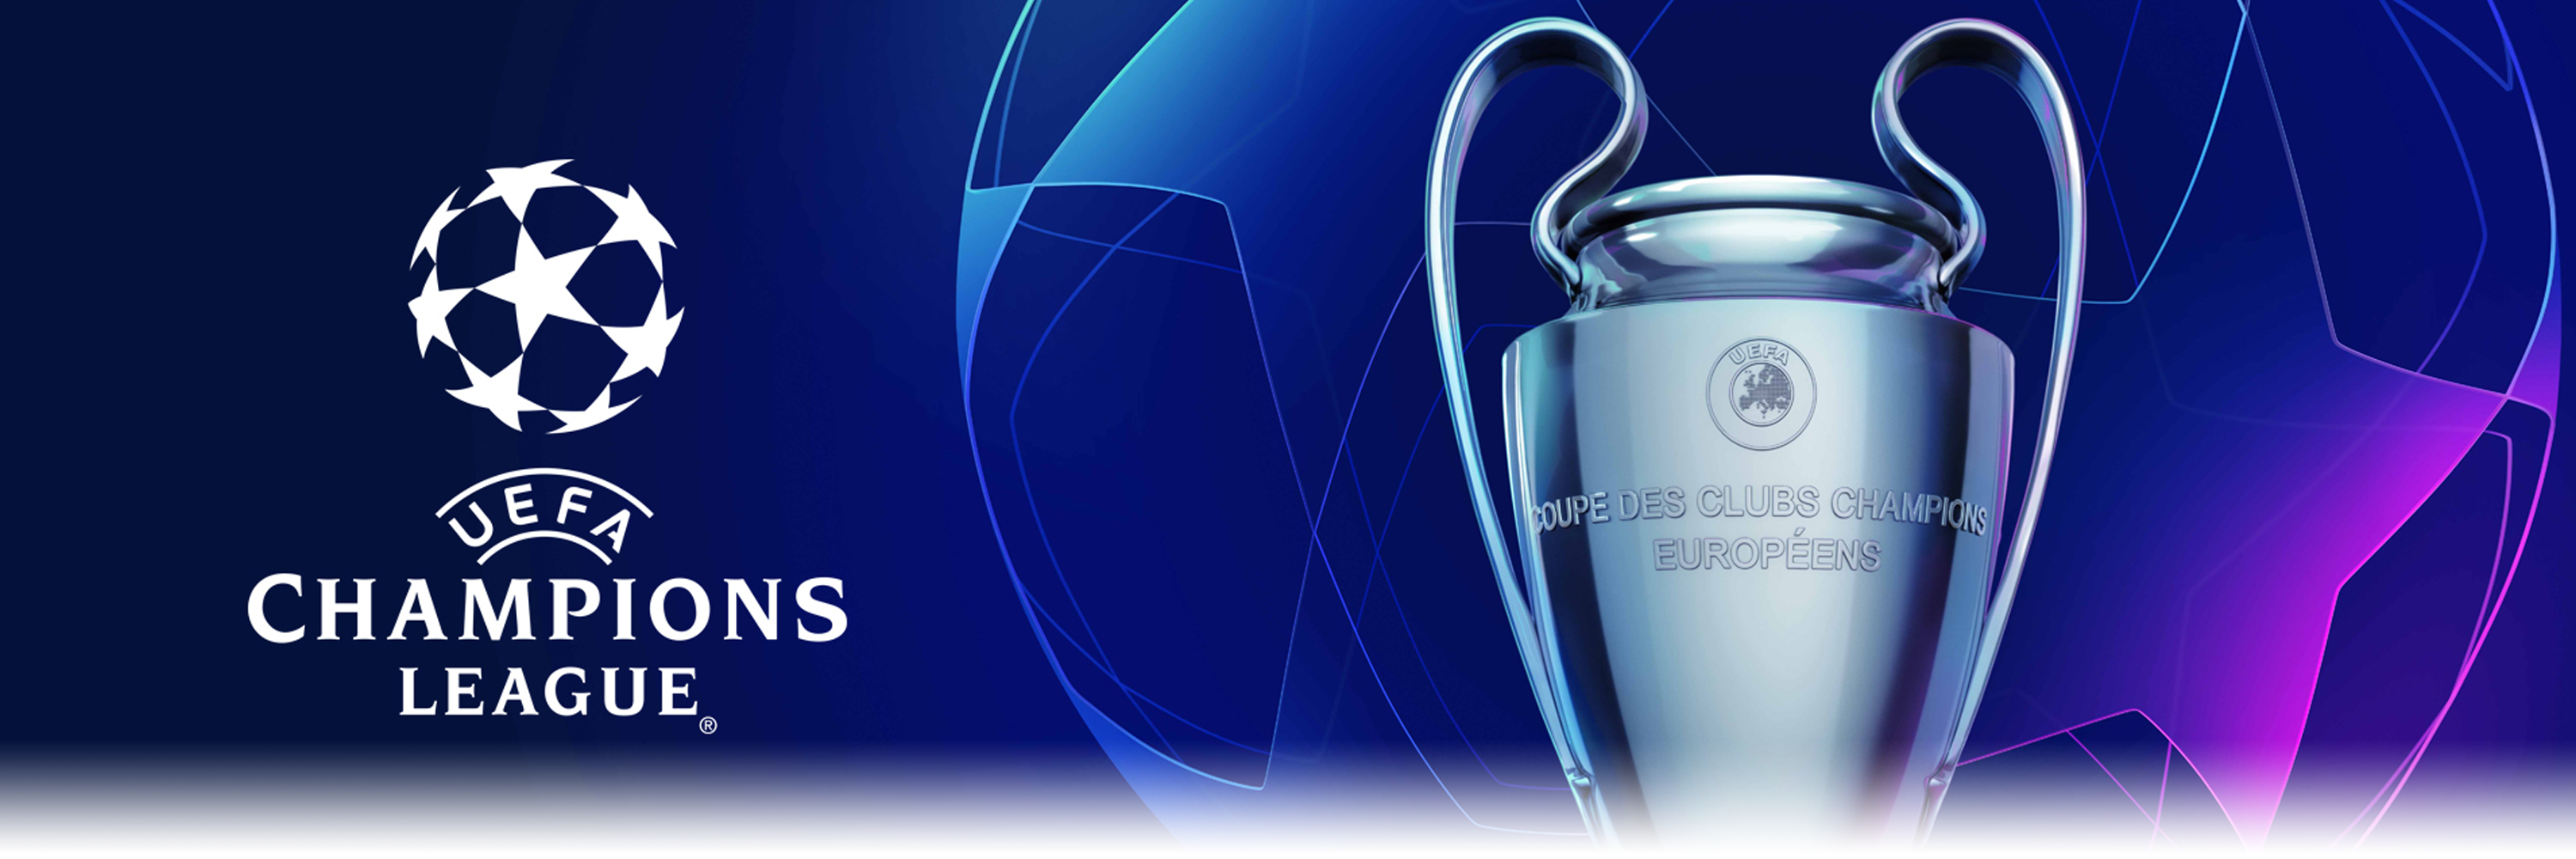 Champions League fixture information